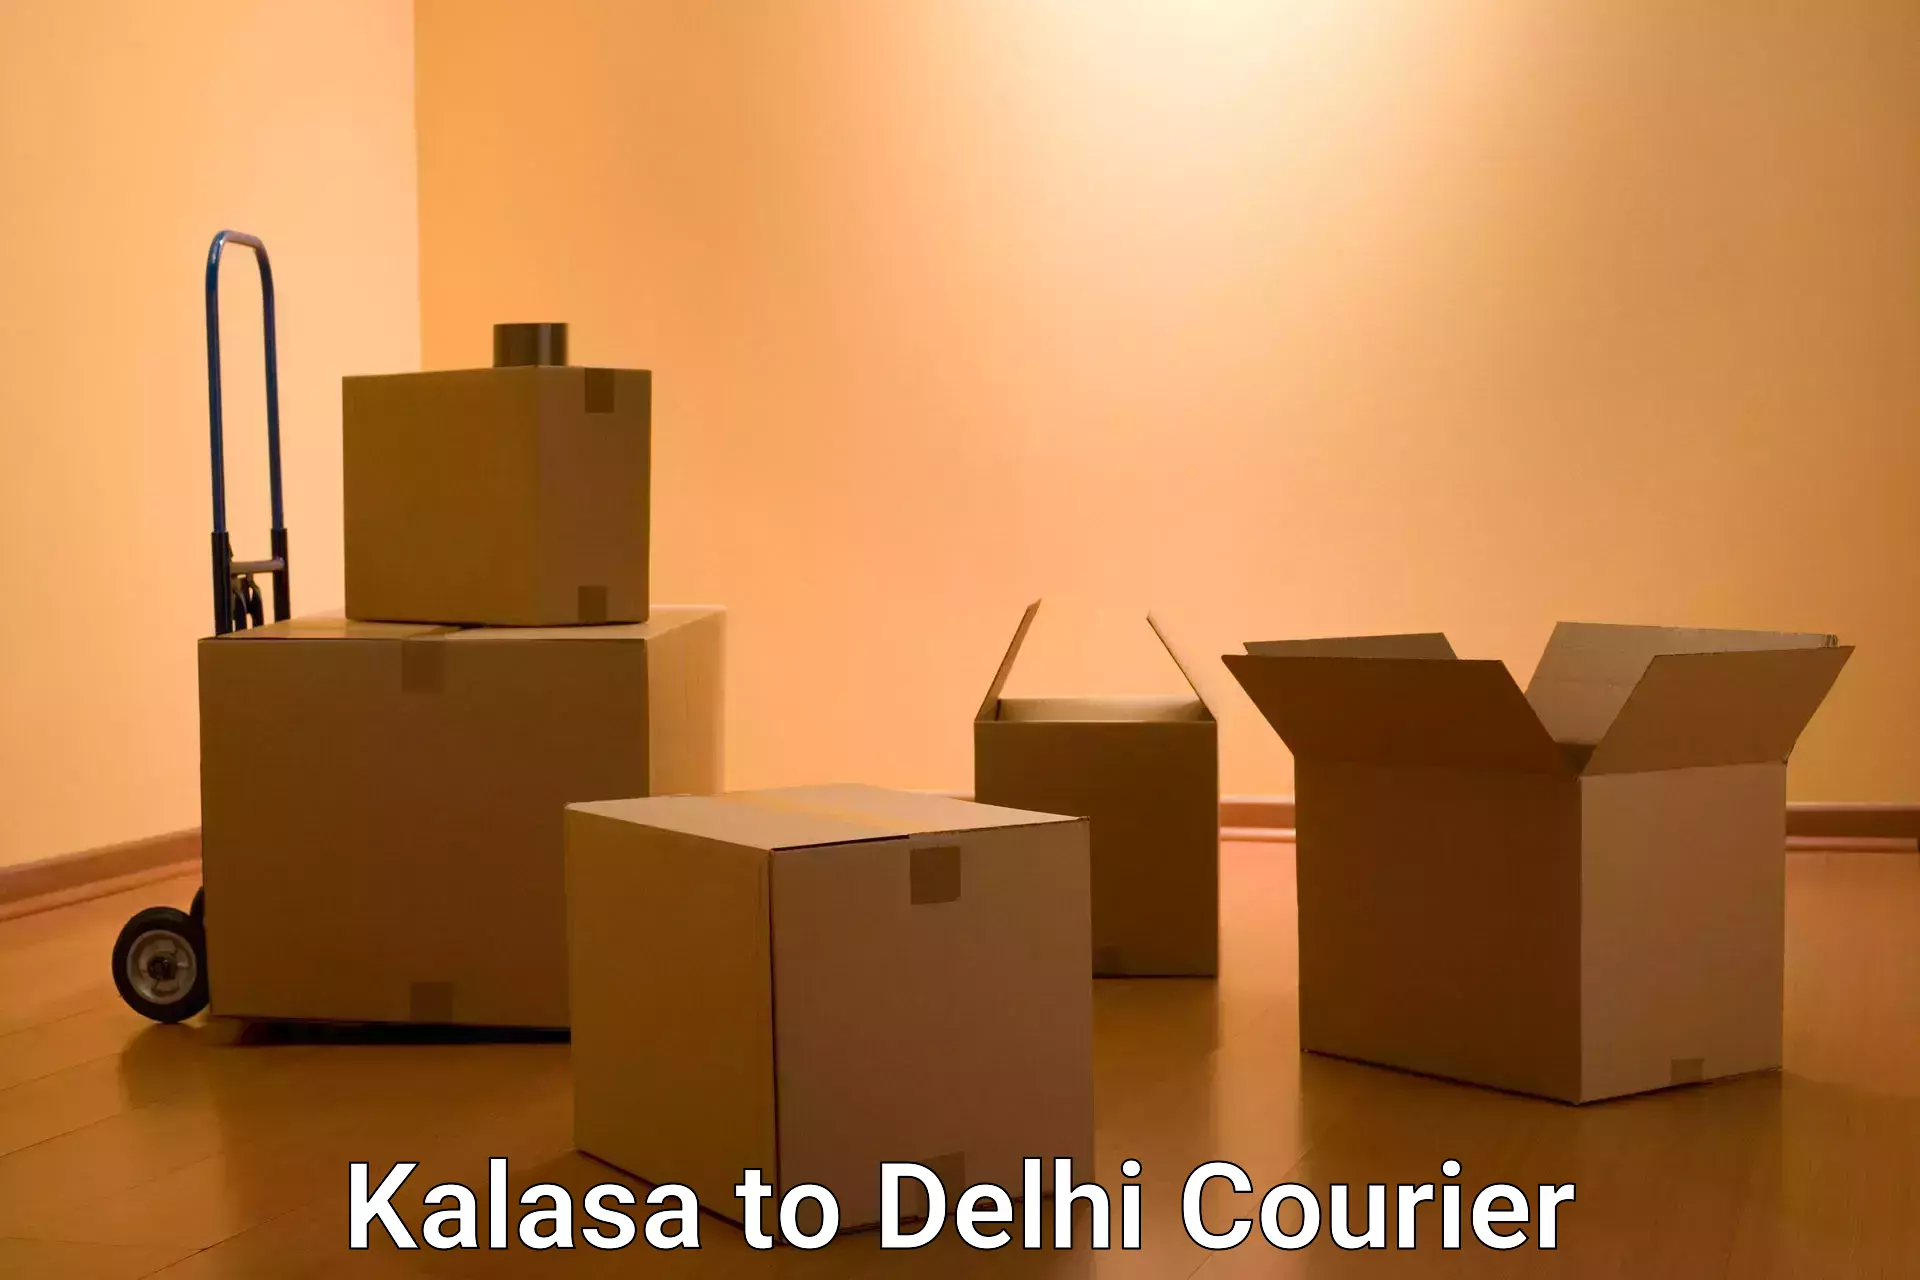 Shipping and handling Kalasa to Lodhi Road